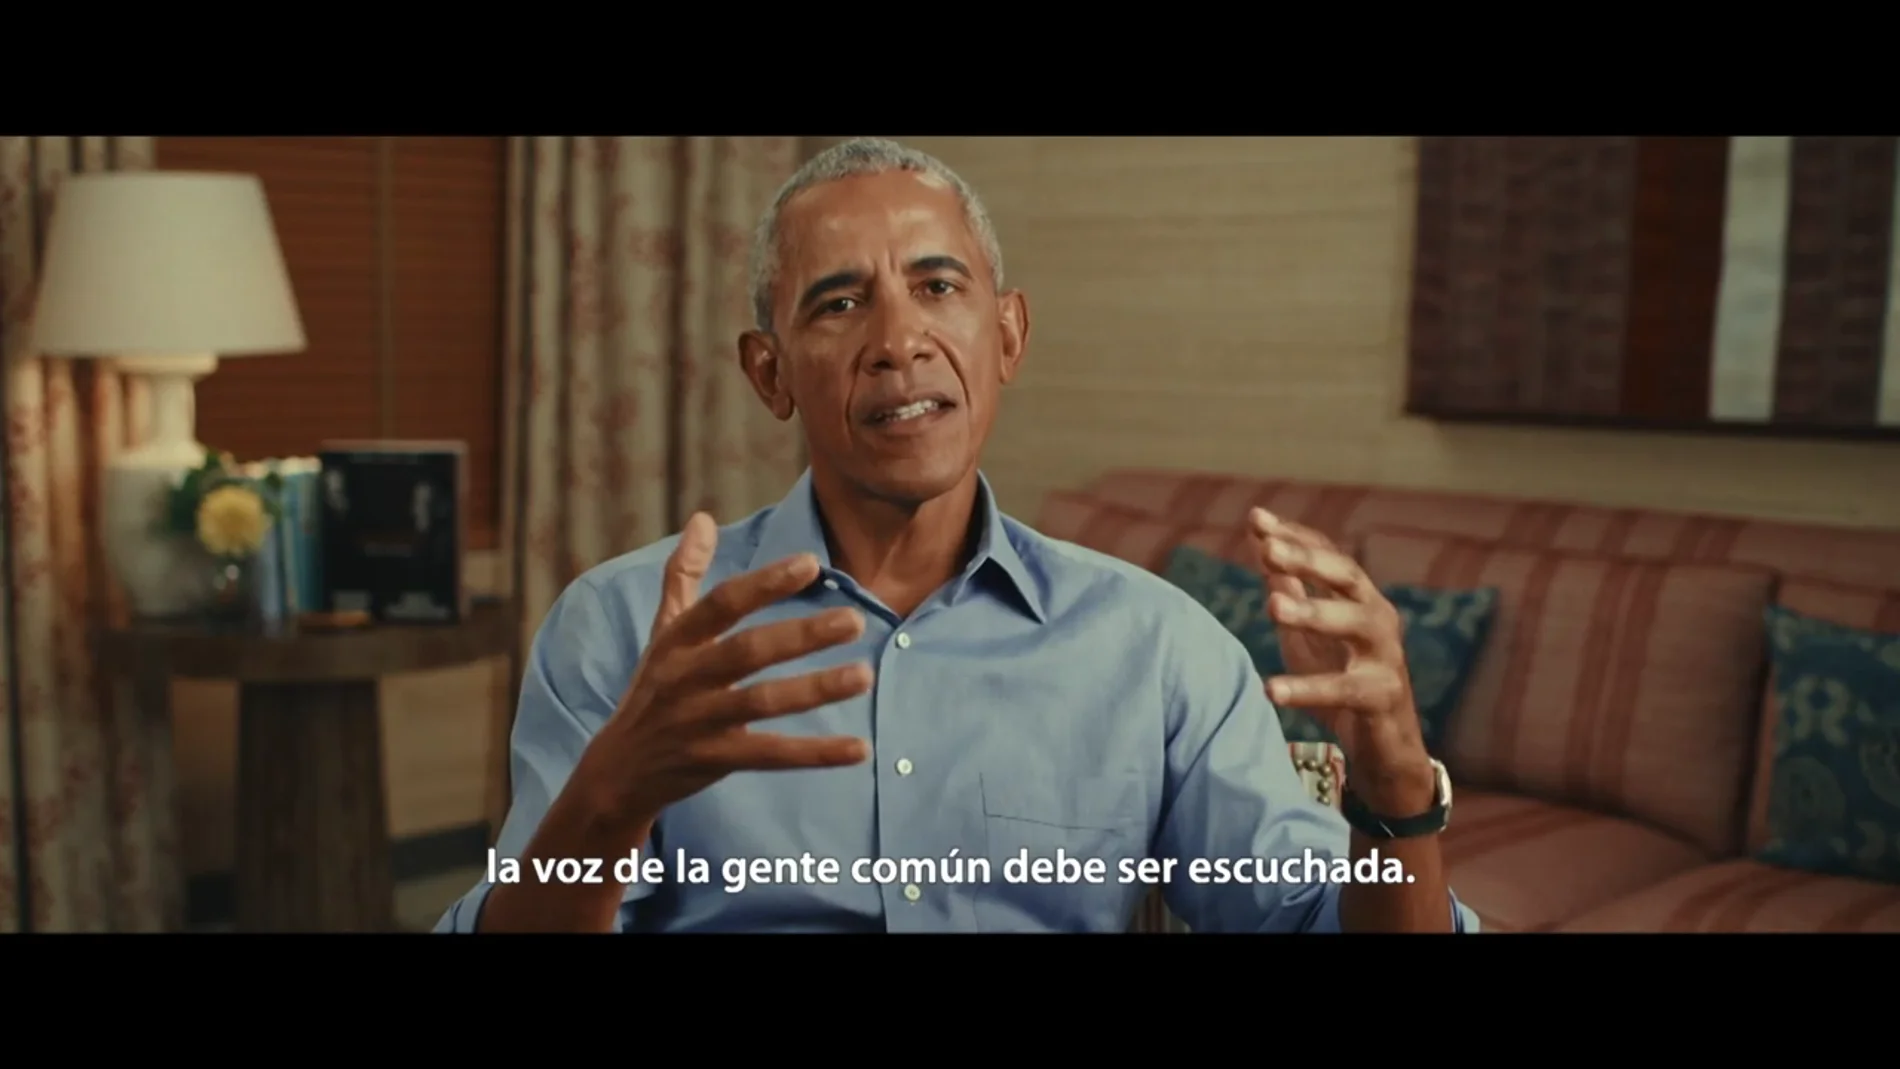 La inesperada confesión de Barack Obama a Gonzo: "América está fundada a base de contradicciones"